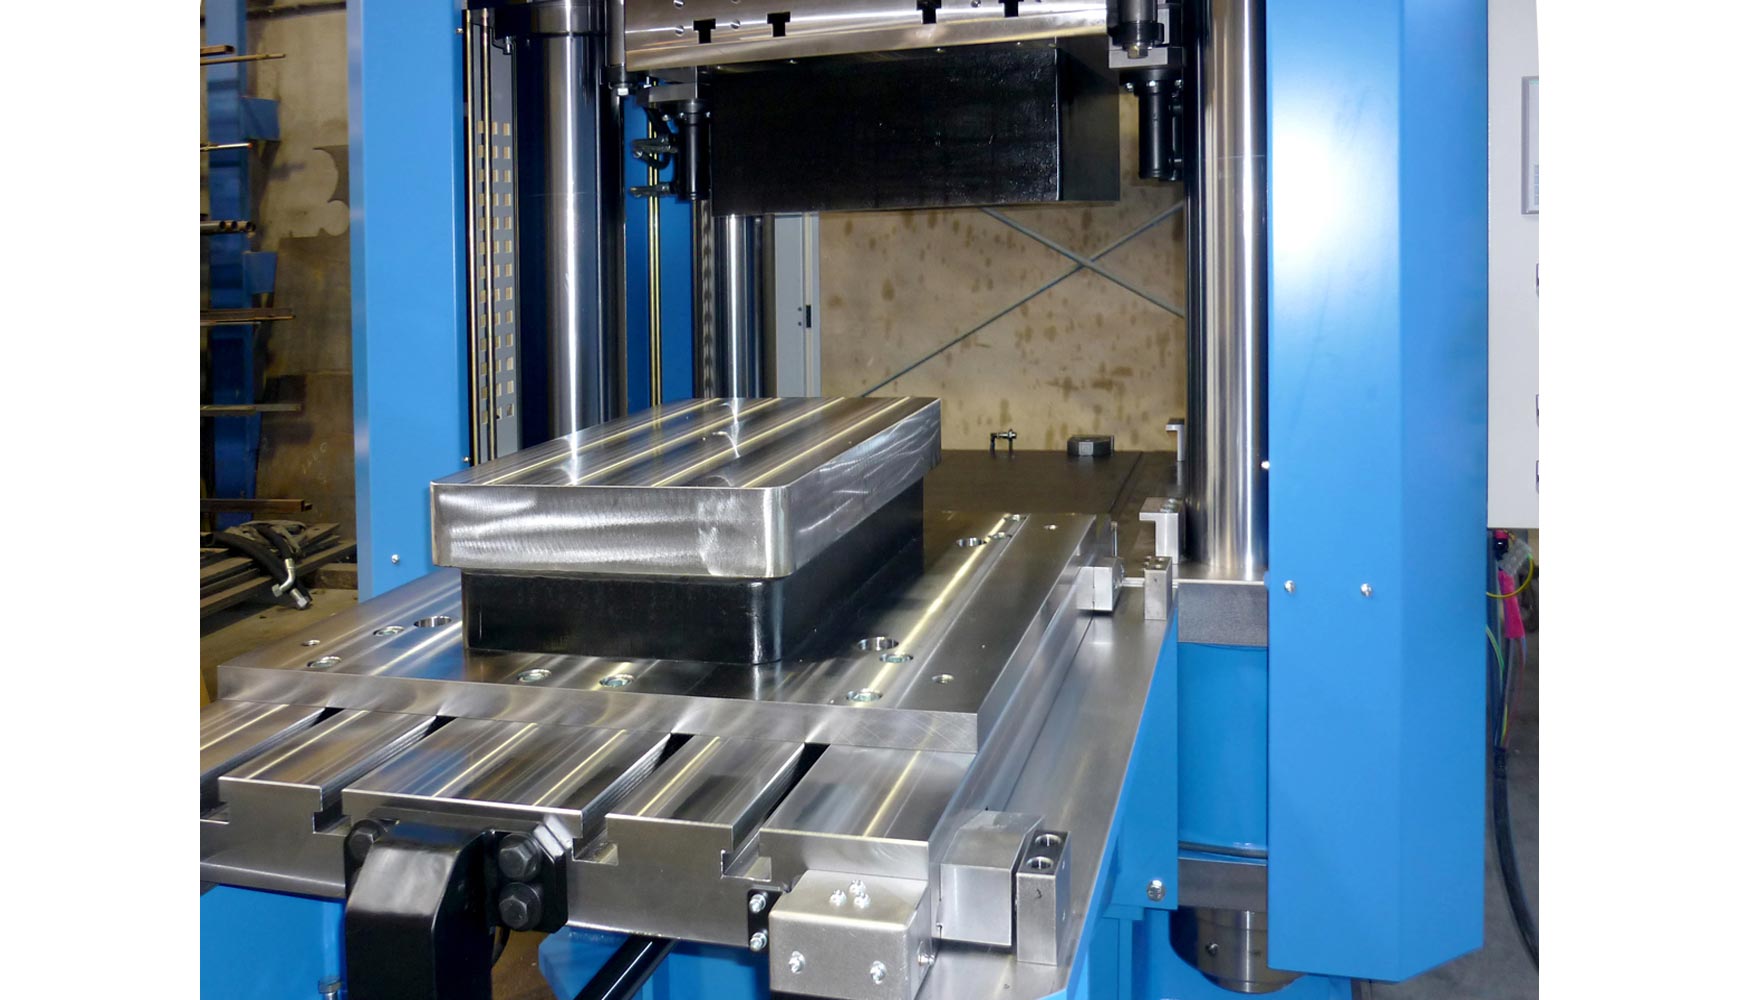 La prensa MV-600E dispone de una mesa superior con amarre hidrulico para las matrices